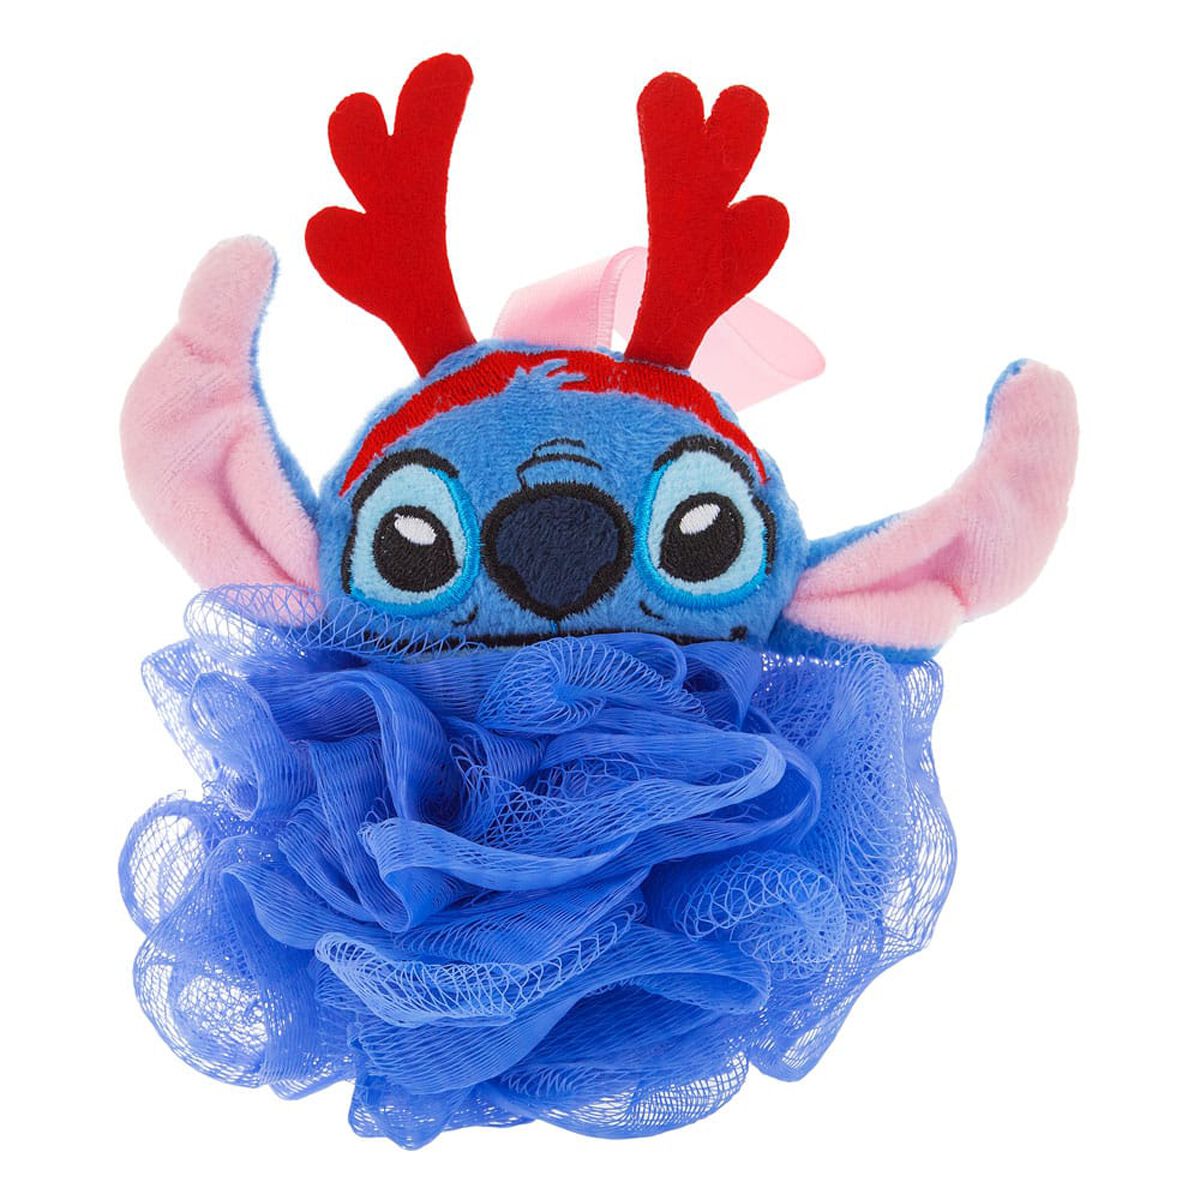 Lilo & Stitch - Disney Badzubehör - Mad Beauty - Stitch Badeschwamm   - Lizenzierter Fanartikel